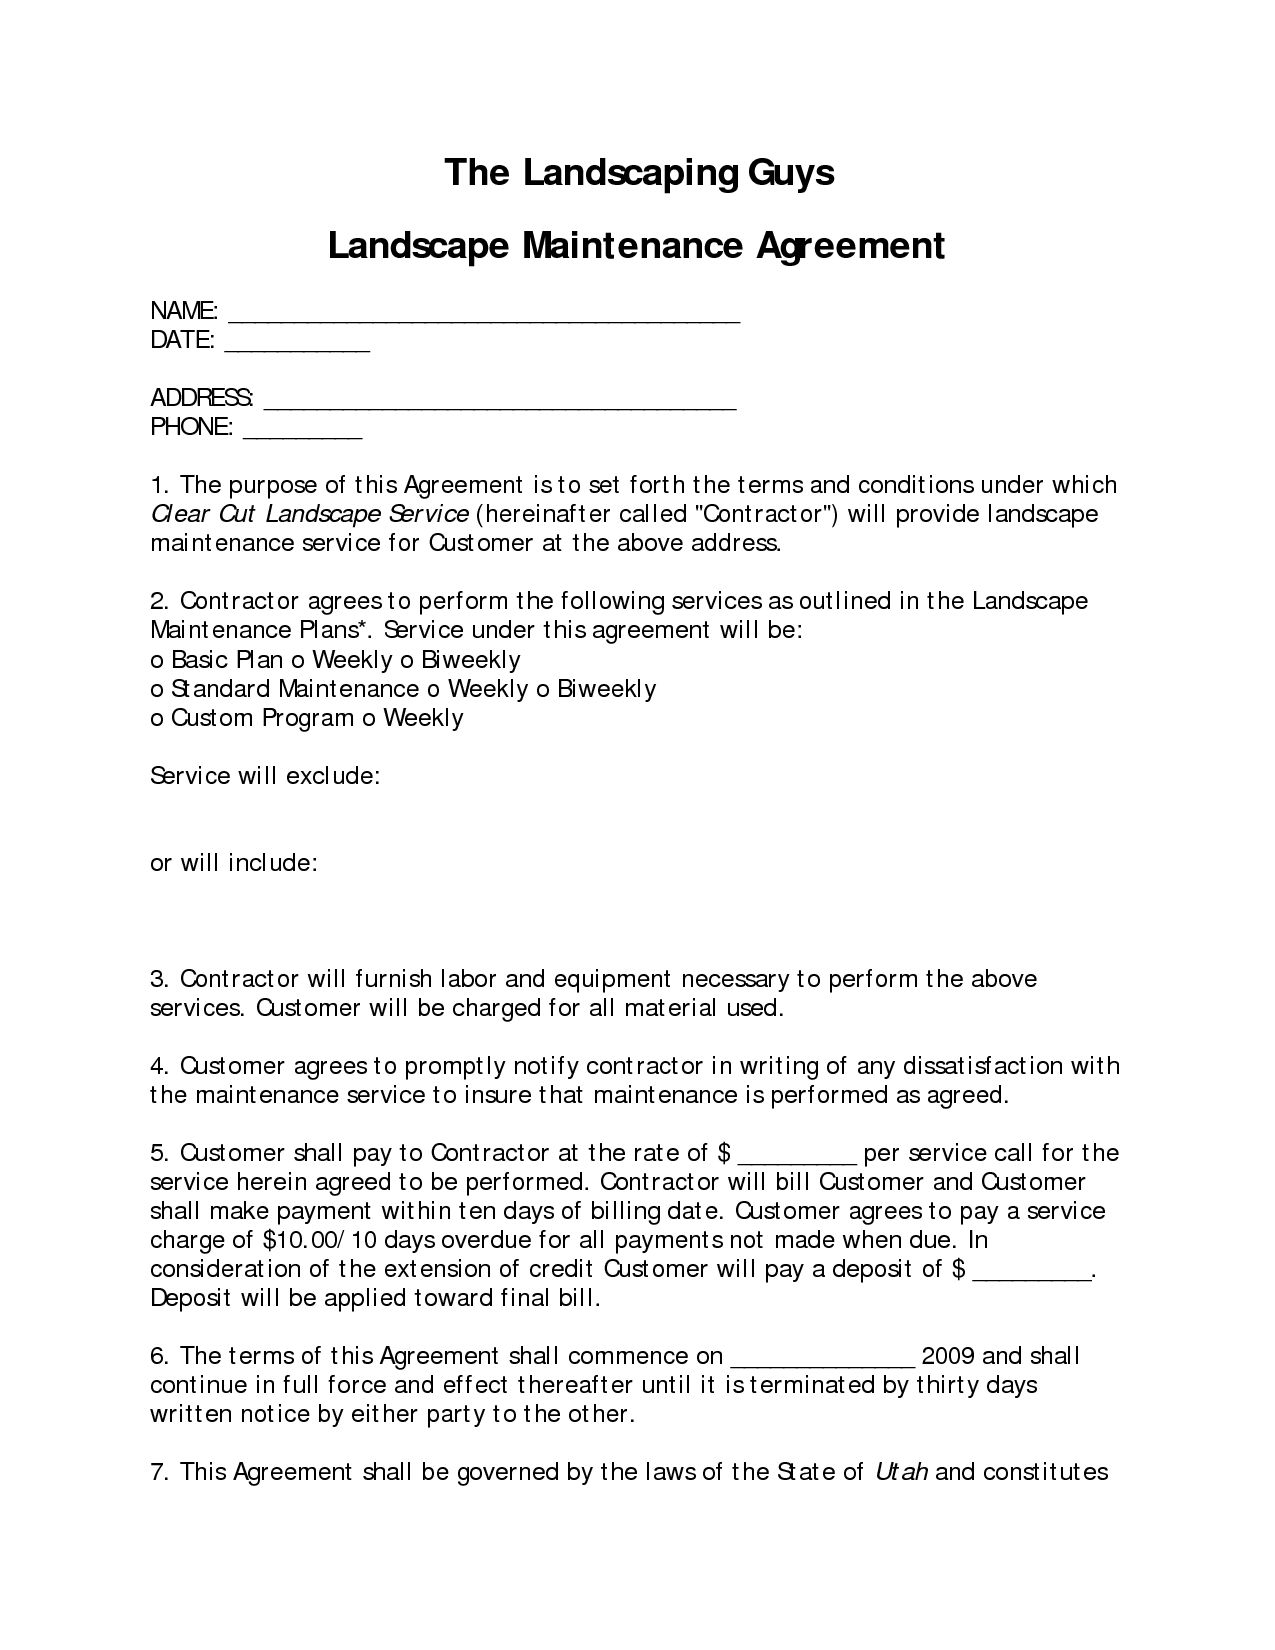 Landscaping Service Agreement Sample Landscape Contract As Landscape Design Services Contract